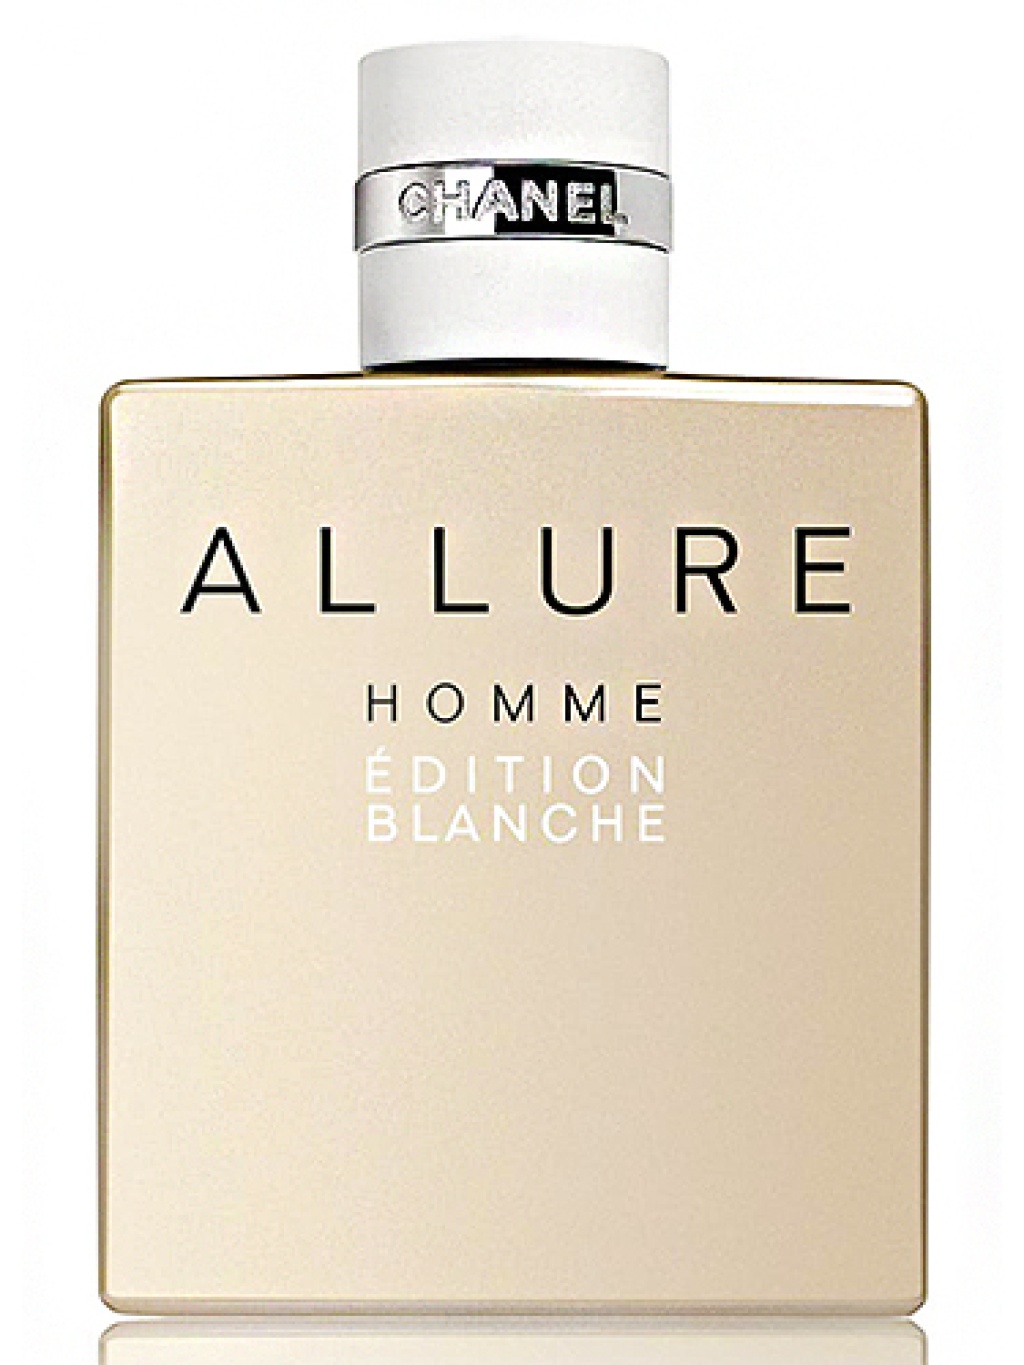 Туалетная вода chanel homme. Шанель Аллюр мужские. Allure homme Edition Blanche 100 ml. Chanel Allure мужской. Мужская туалетная вода Chanel Allure homme.